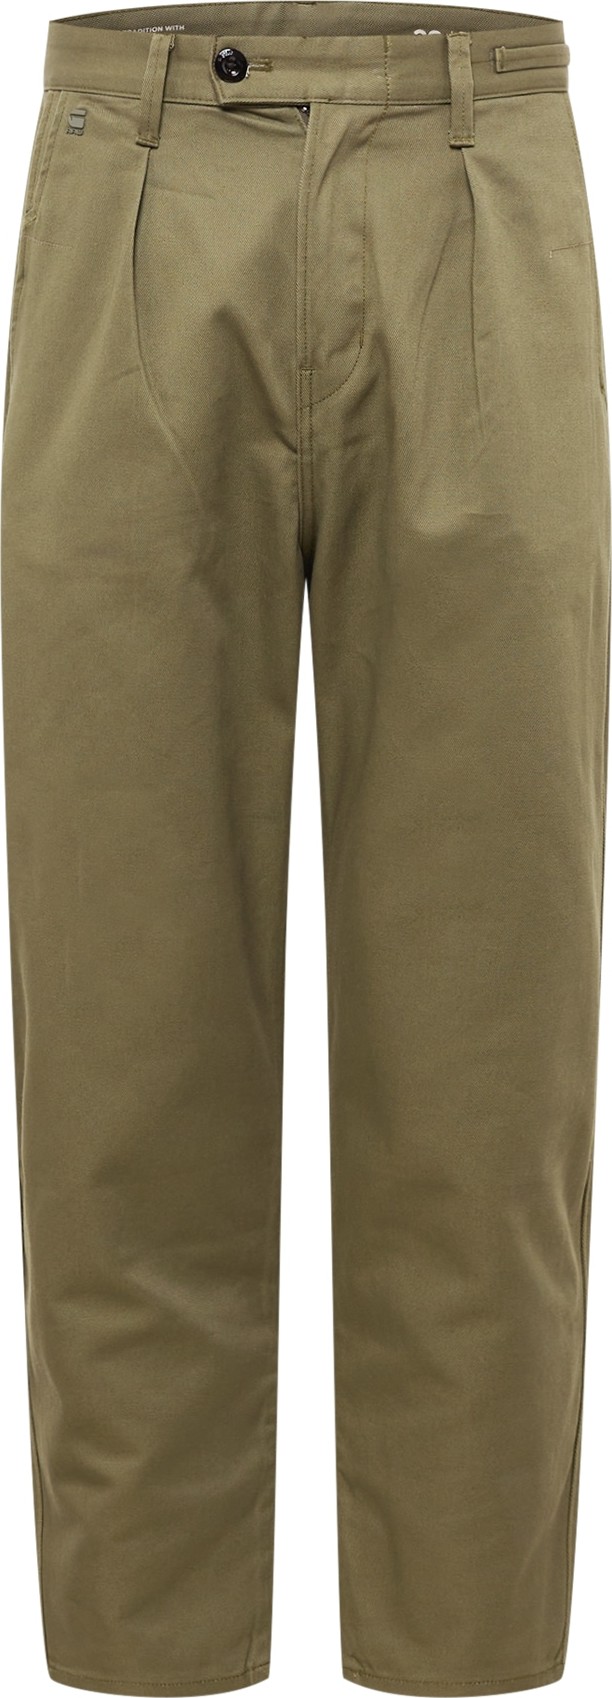 Kalhoty se sklady v pase G-Star Raw olivová